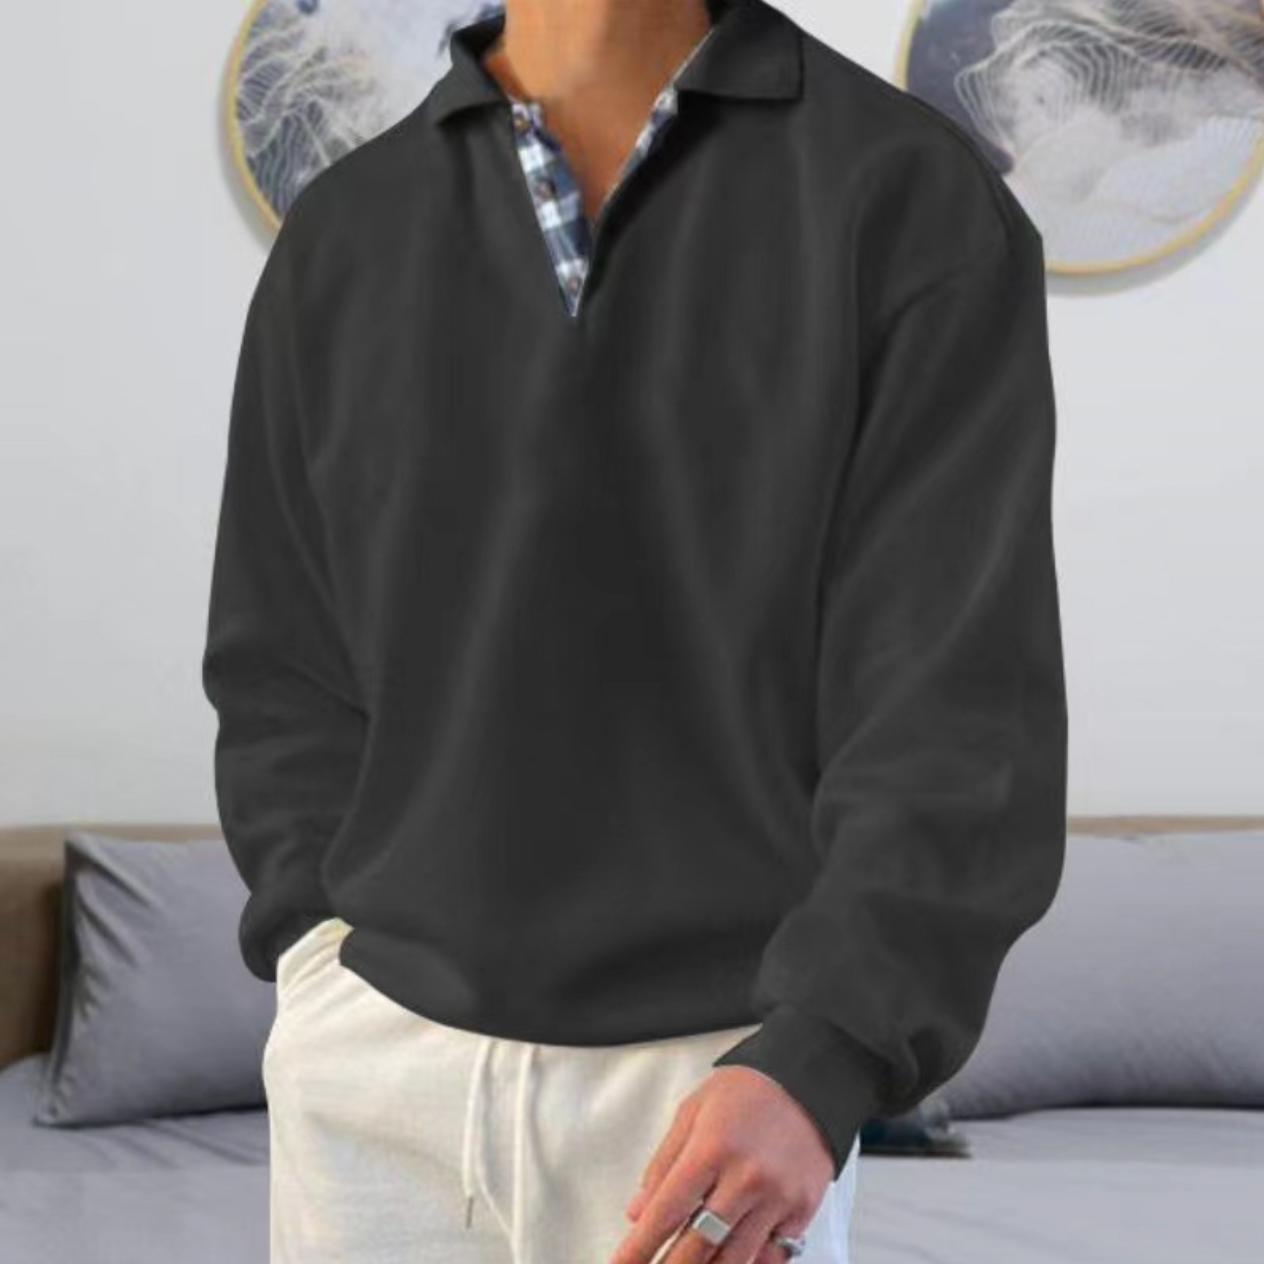 FABU - Der einzigartige und kuschelig warme Pullover